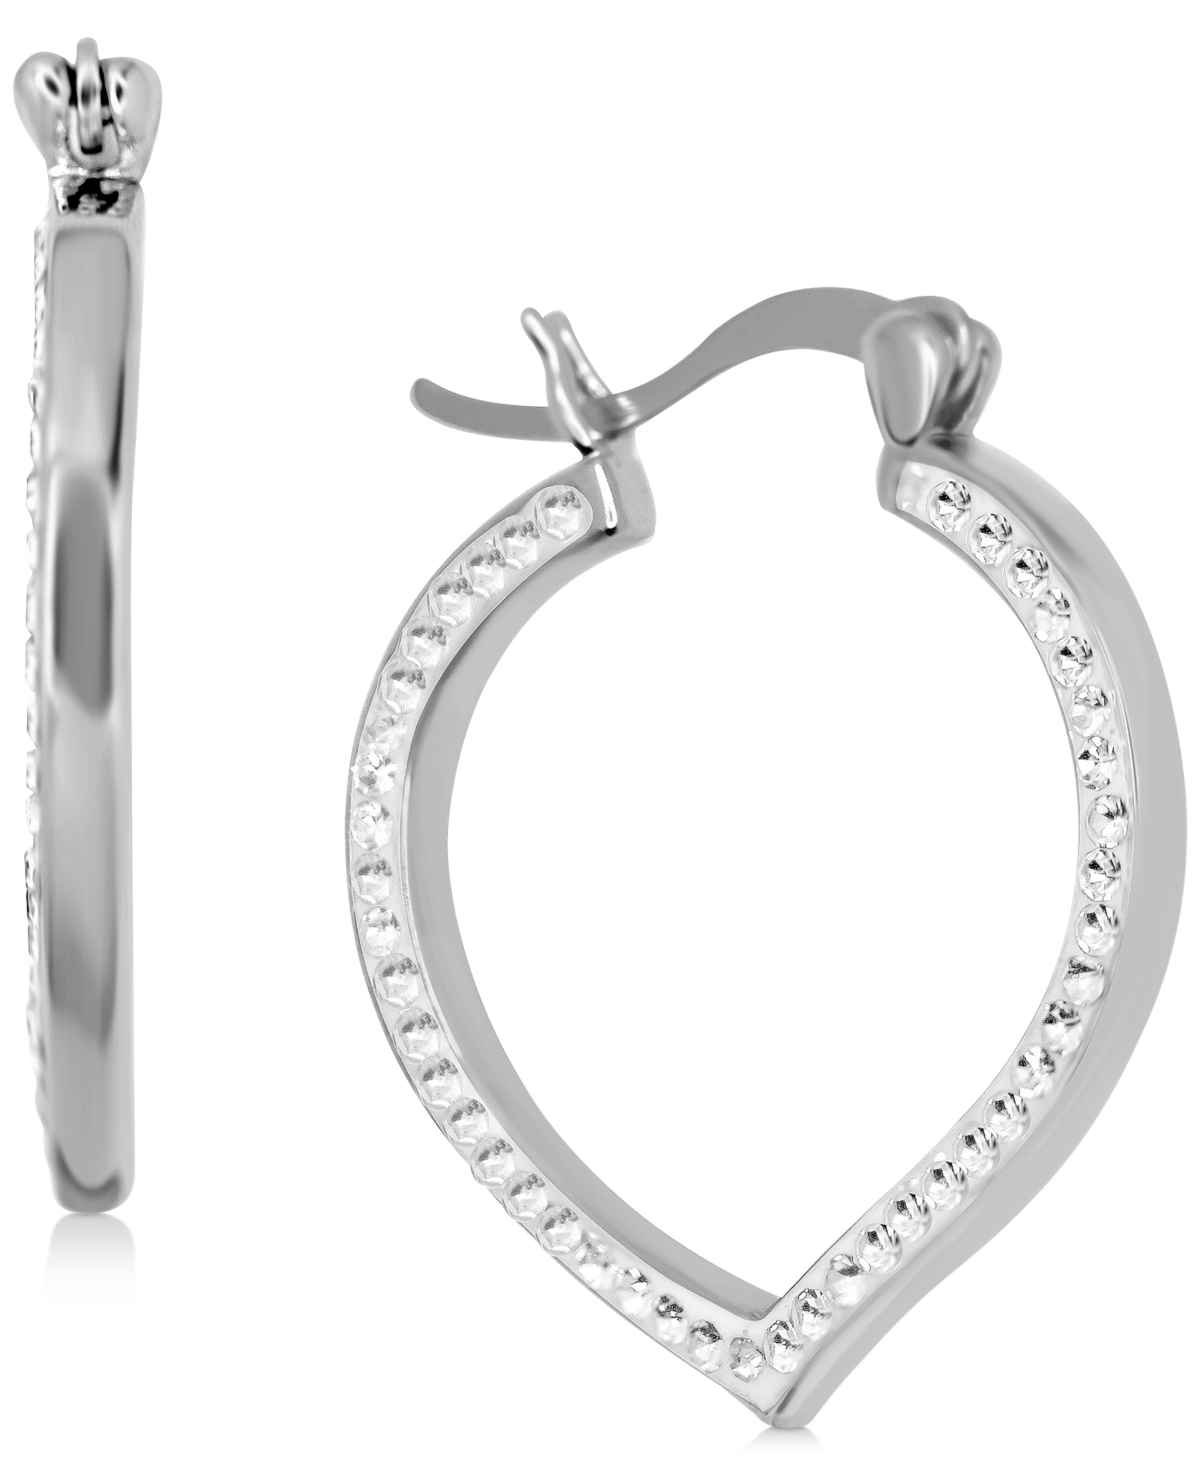 Crystal Teardrop Hoop Earrings in Silver-Plate - Silver